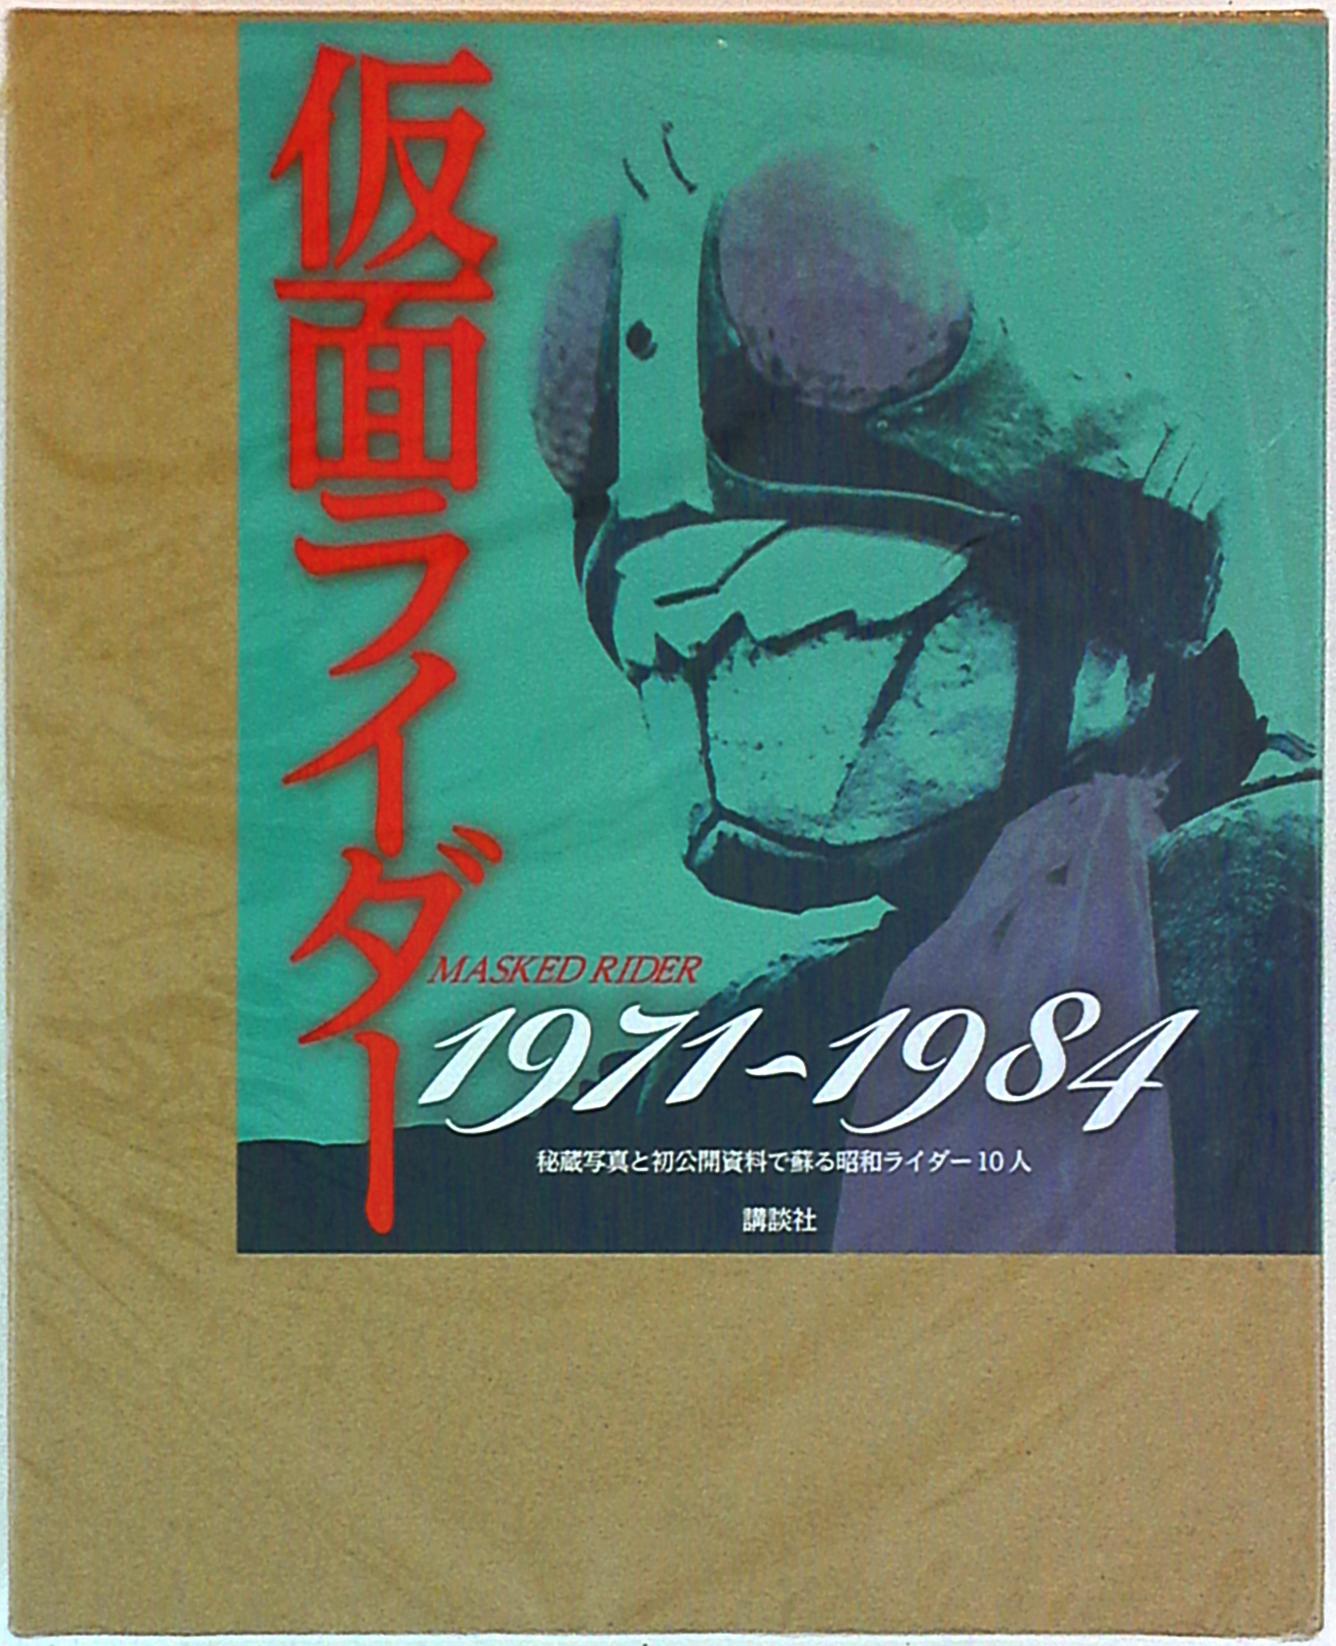 仮面ライダー 1971-1984 秘蔵写真と初公開資料で蘇る昭和ライダー10人 